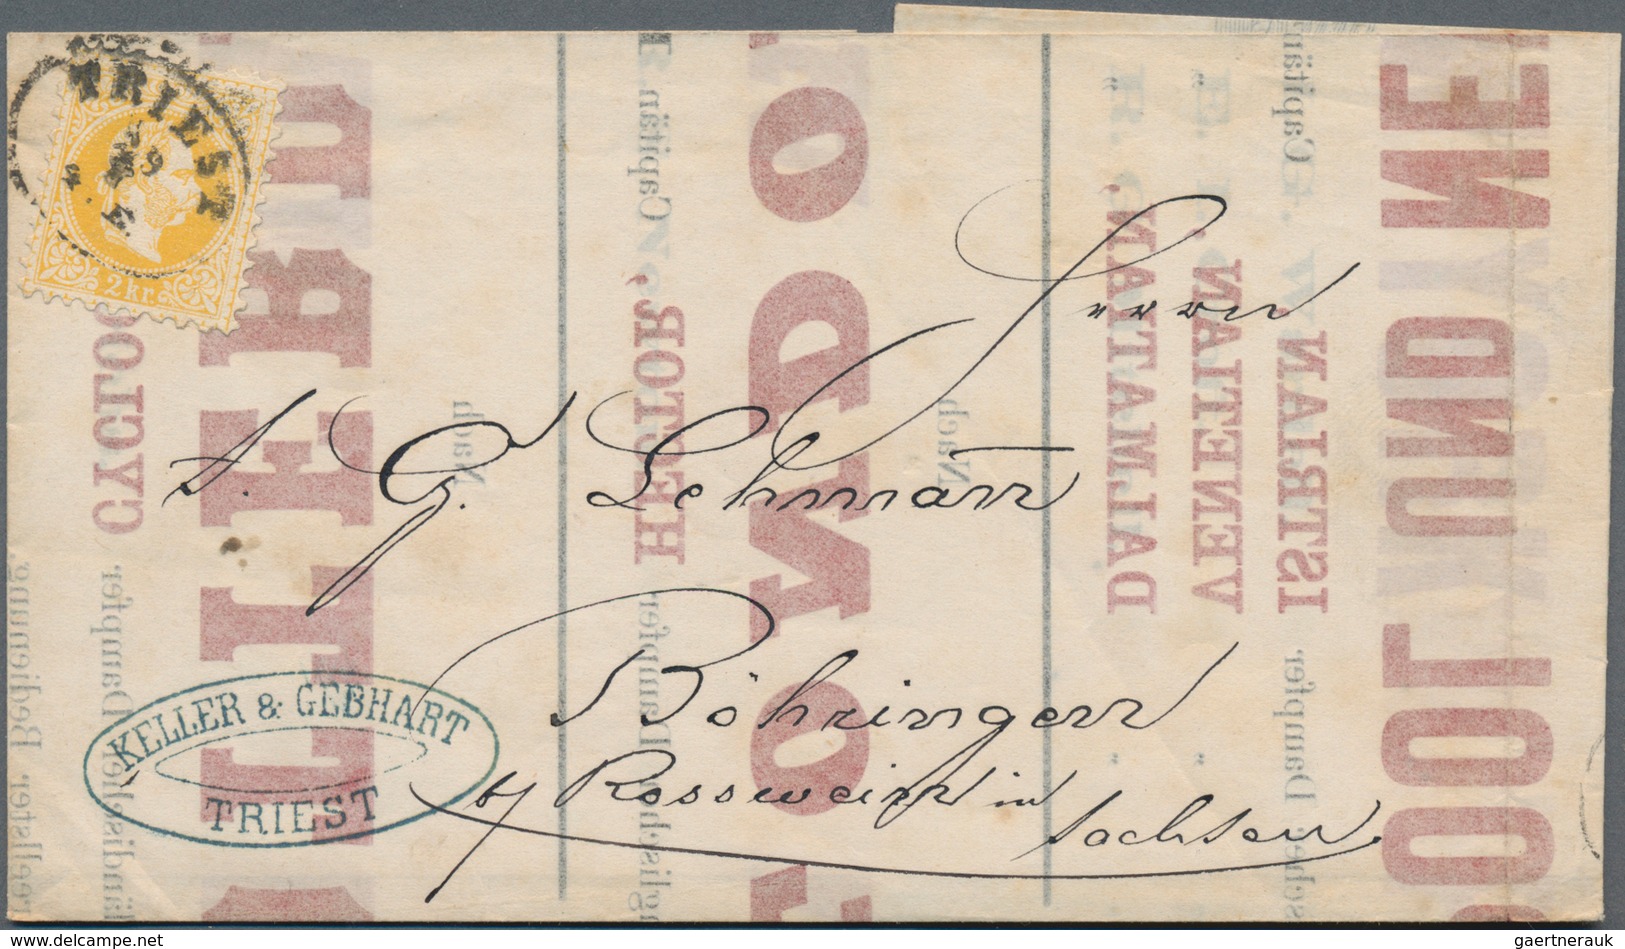 Österreich: 1857/1891, Lot Von Elf Briefen Und Karten, Dabei Zierstempel "Elbogen", Fingerhutstempel - Sammlungen